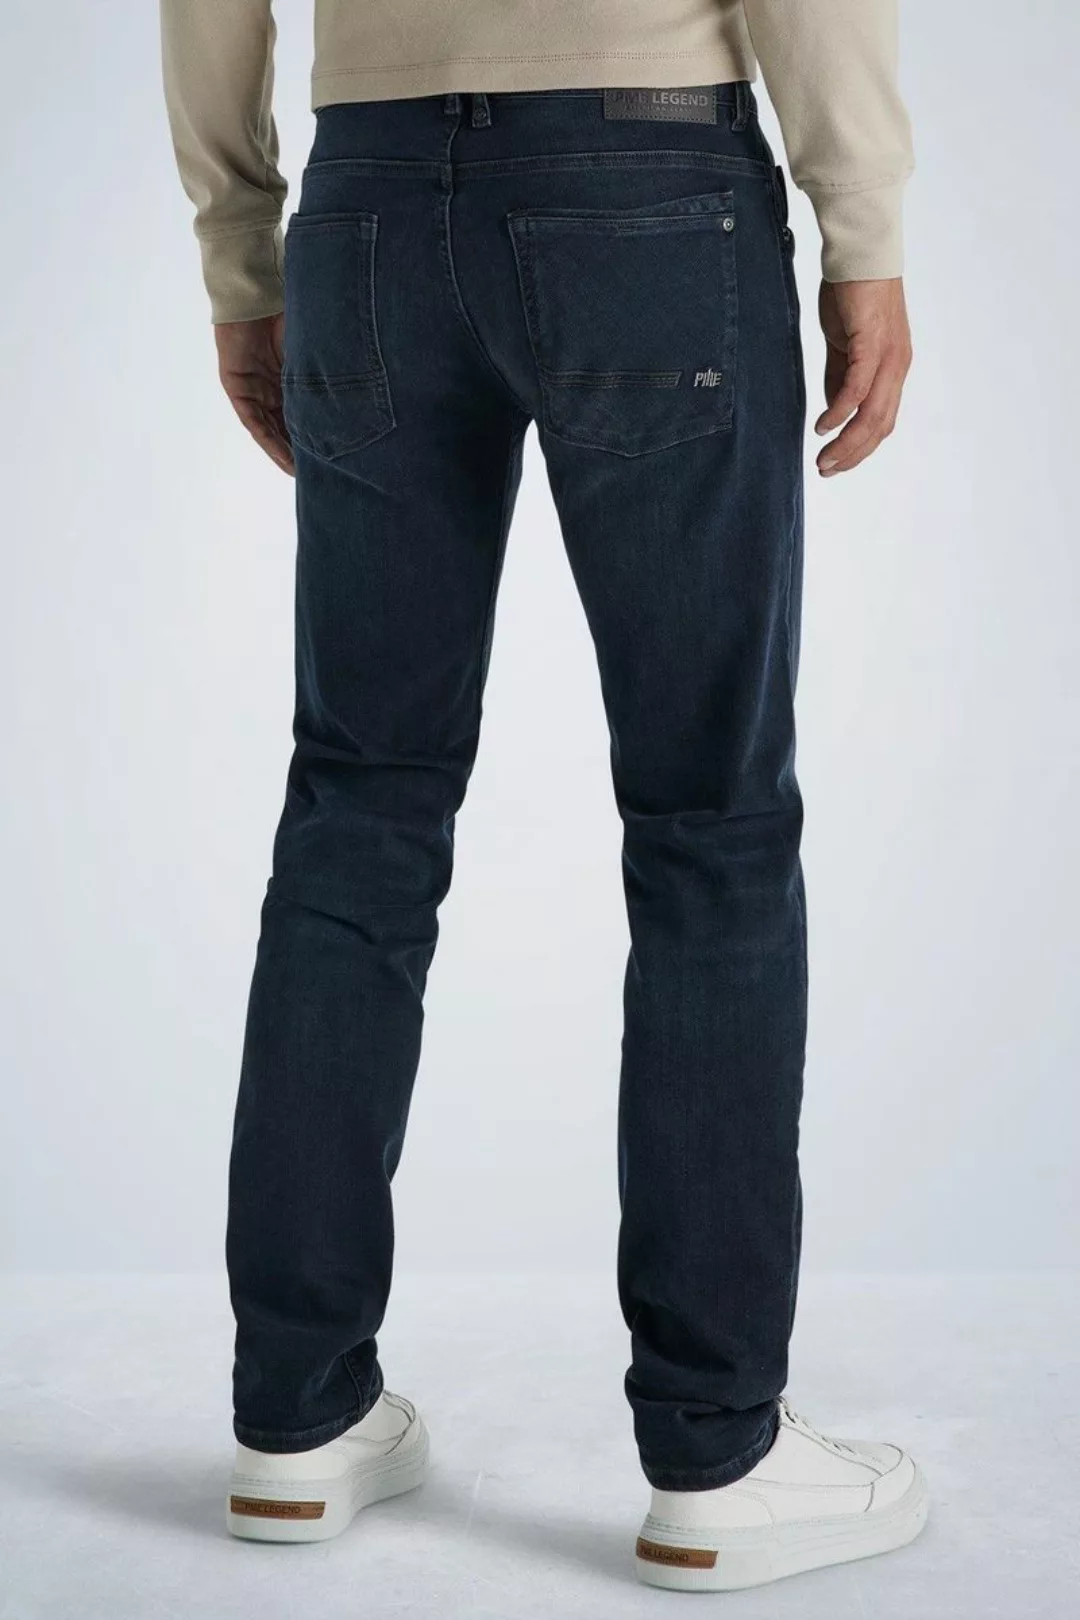 PME Legend Commander 3.0 Jeans Blau Schwarz - Größe W 35 - L 30 günstig online kaufen